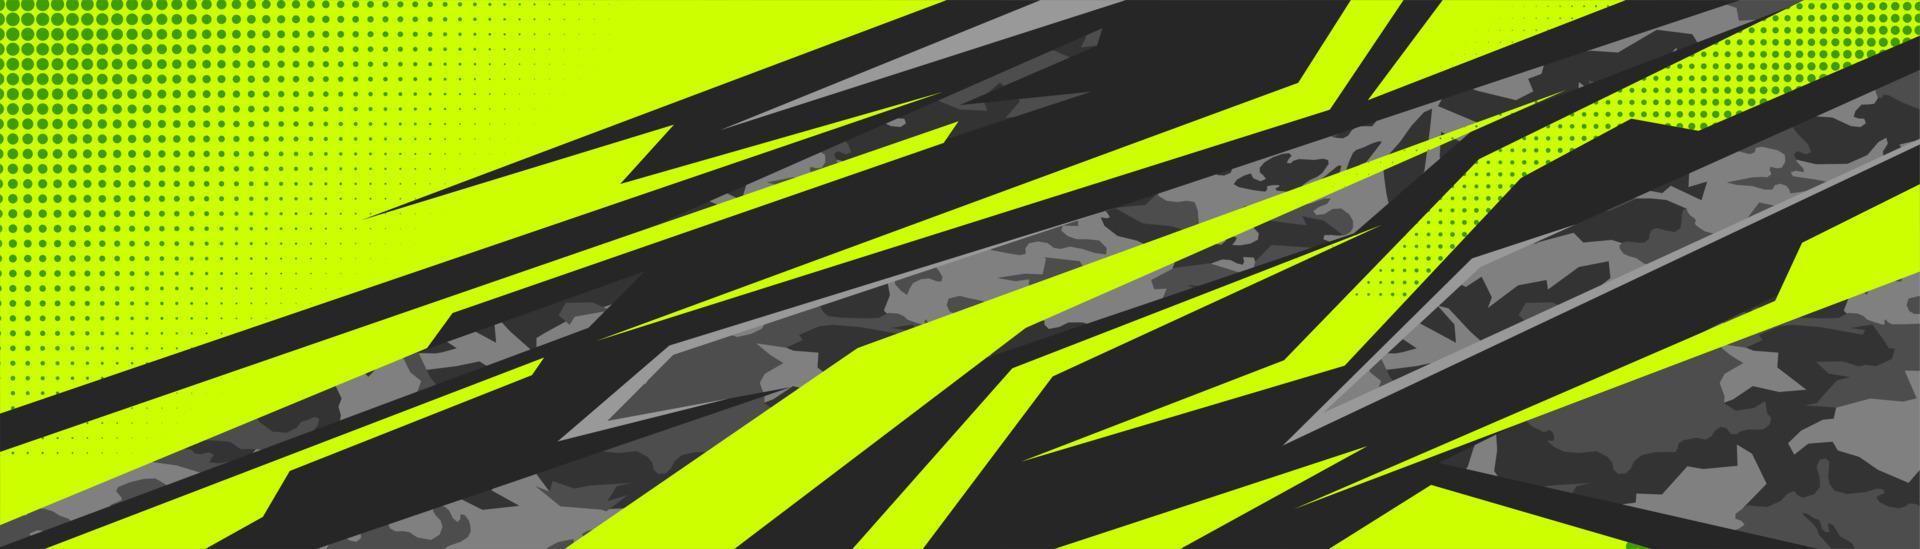 abstrakt bil dekal design vektor. grafisk abstrakt stripe racing bakgrundssatsdesign för wrap-fordon, racerbil, rally, äventyr och livery vektor